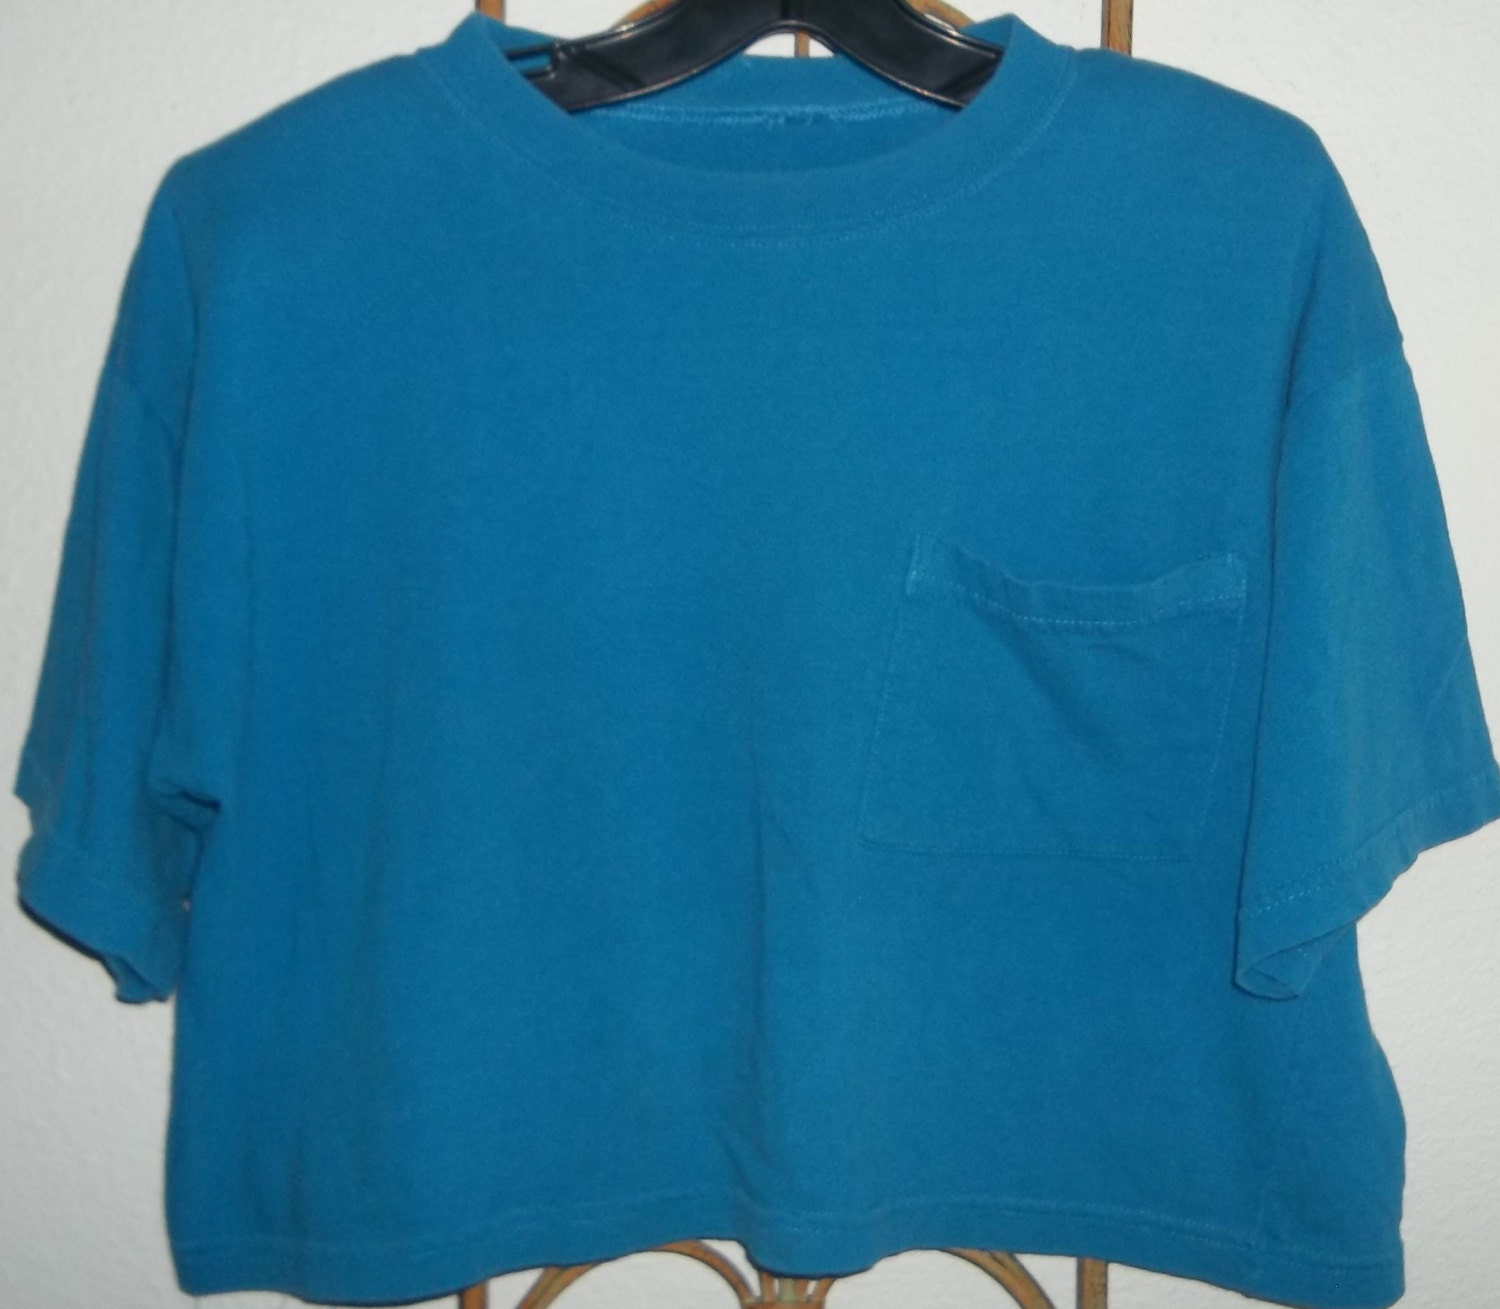 Vintage 1980's Half Shirt With Shoulder Pads / Vintage